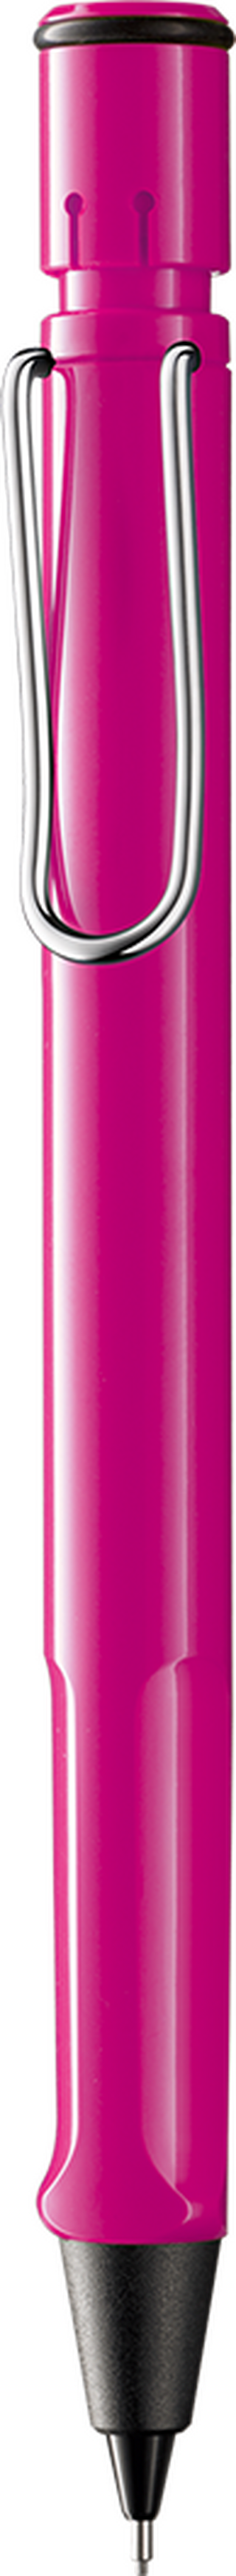 Druckbleistift LAMY safari pink HB 0,5 mm